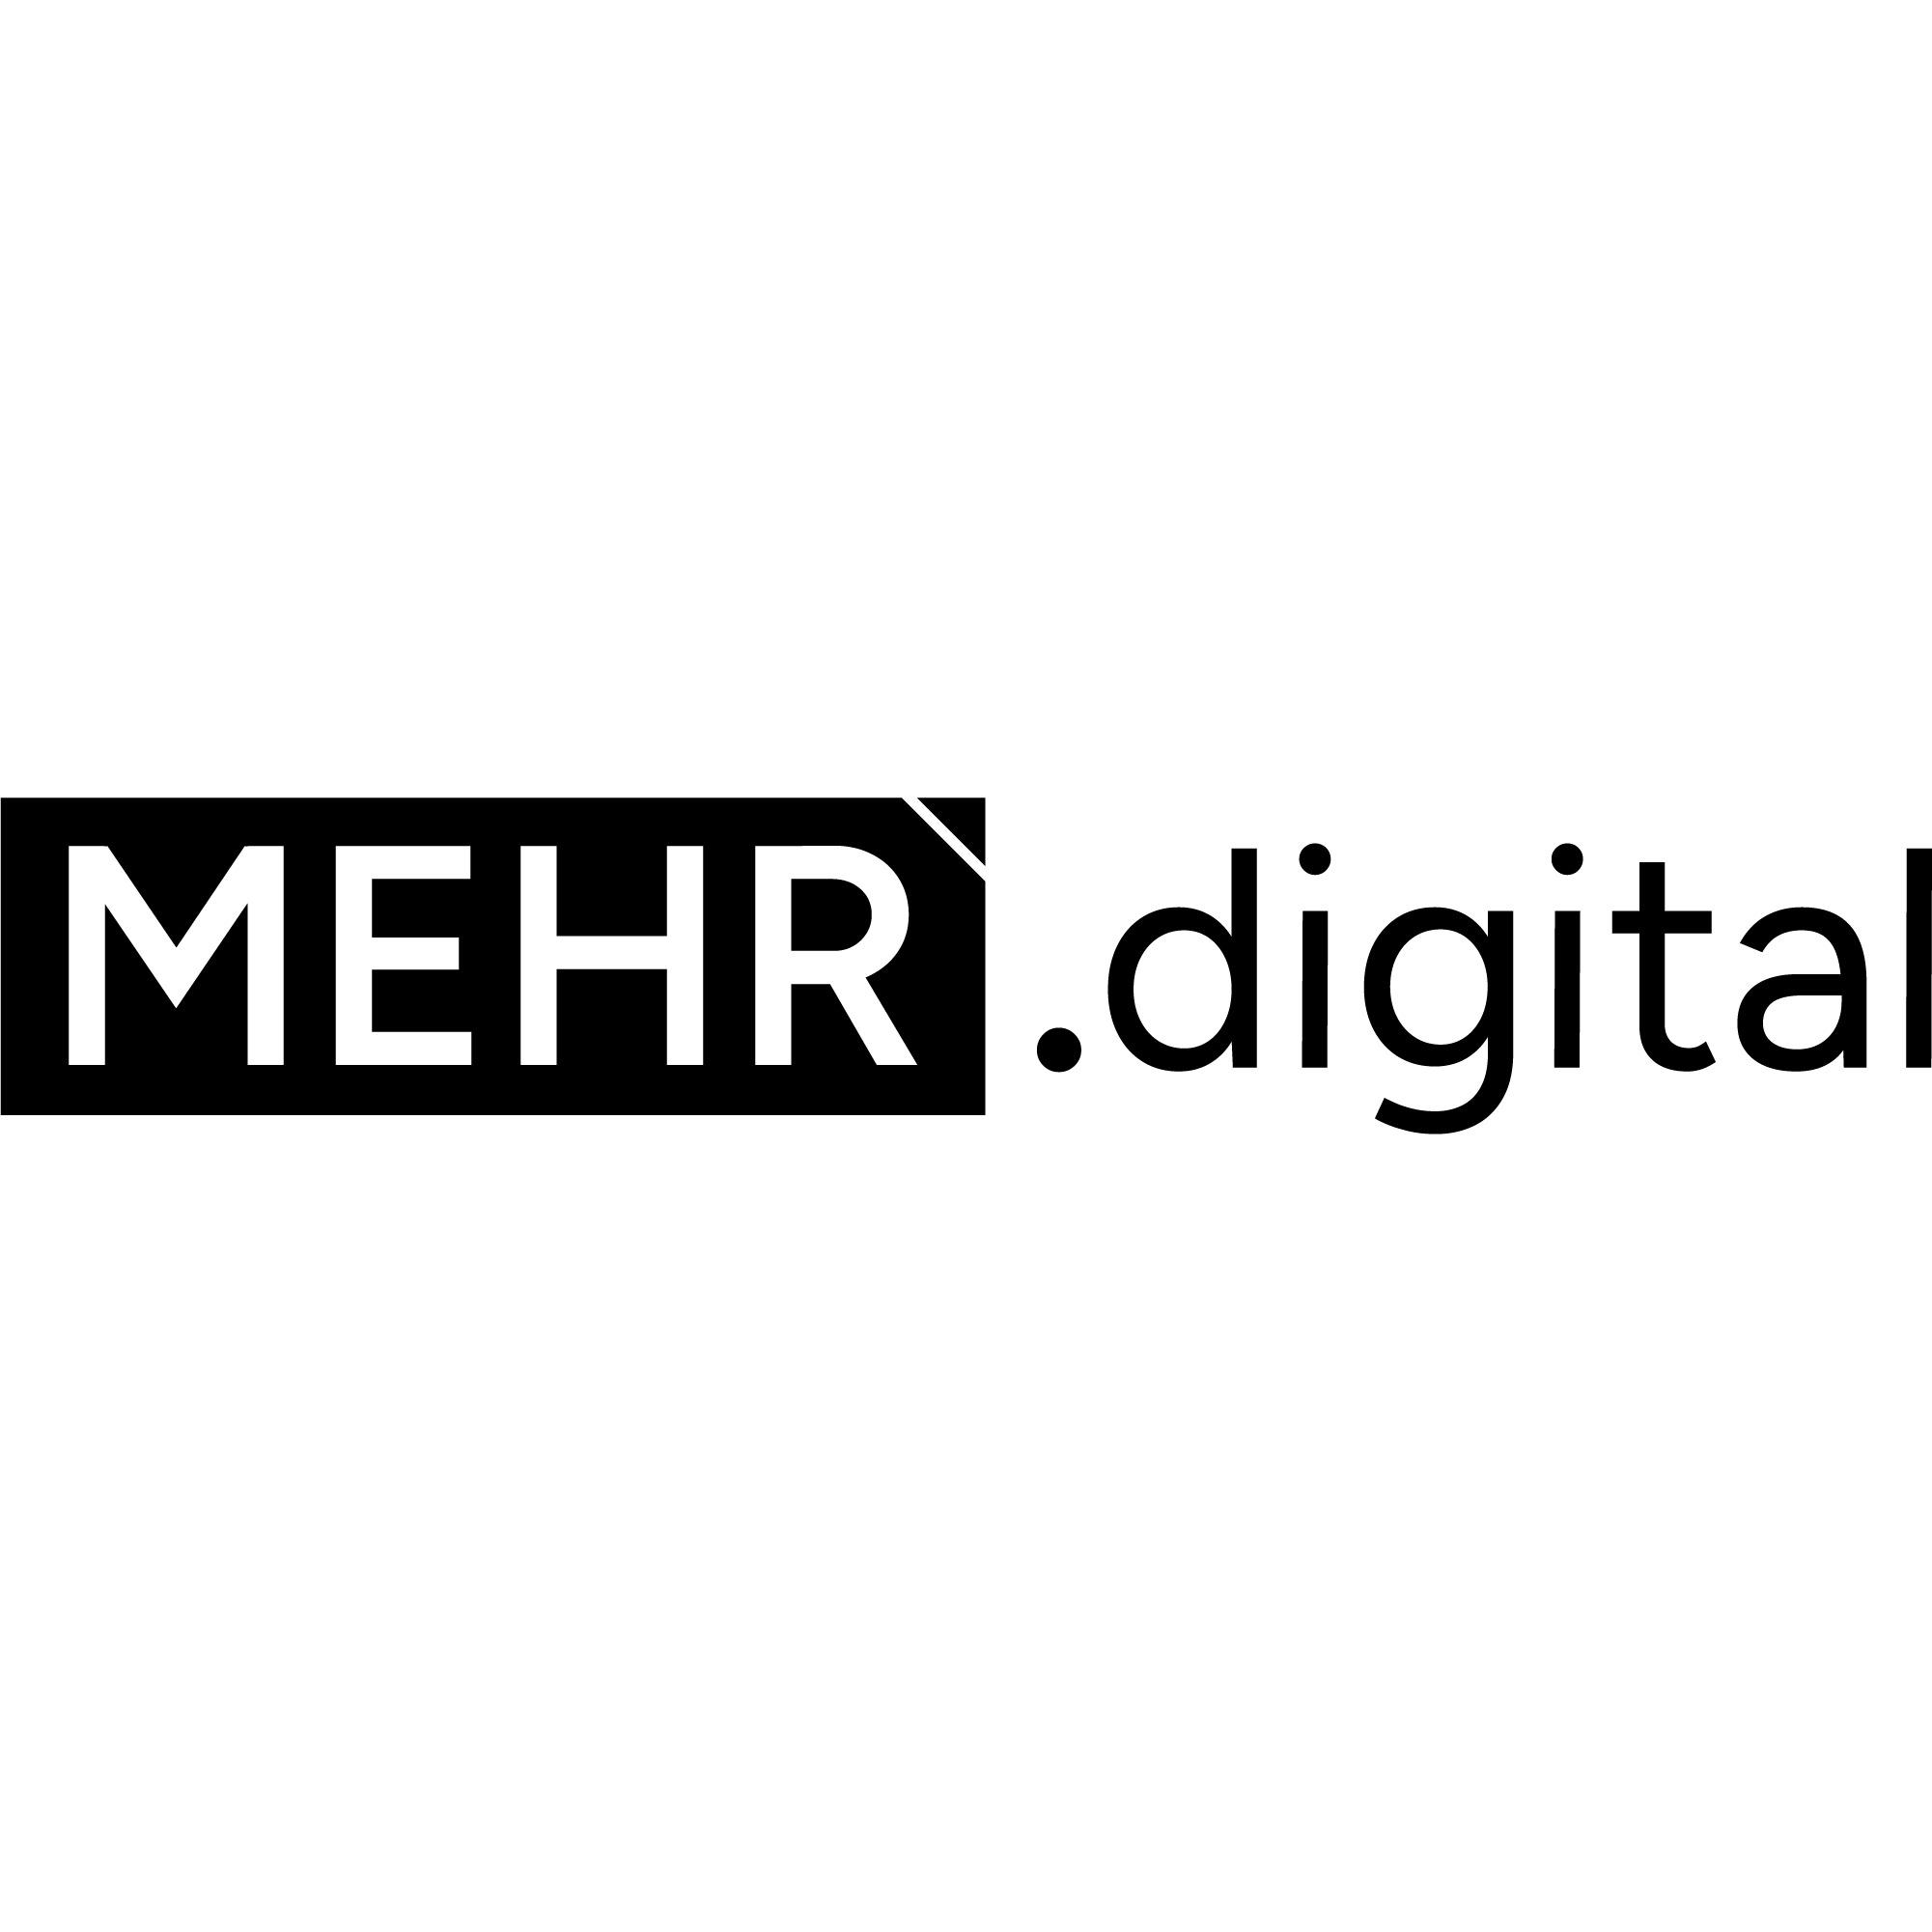 Eberling & Scholz GbR - MEHR. digital in Heilbronn am Neckar - Logo